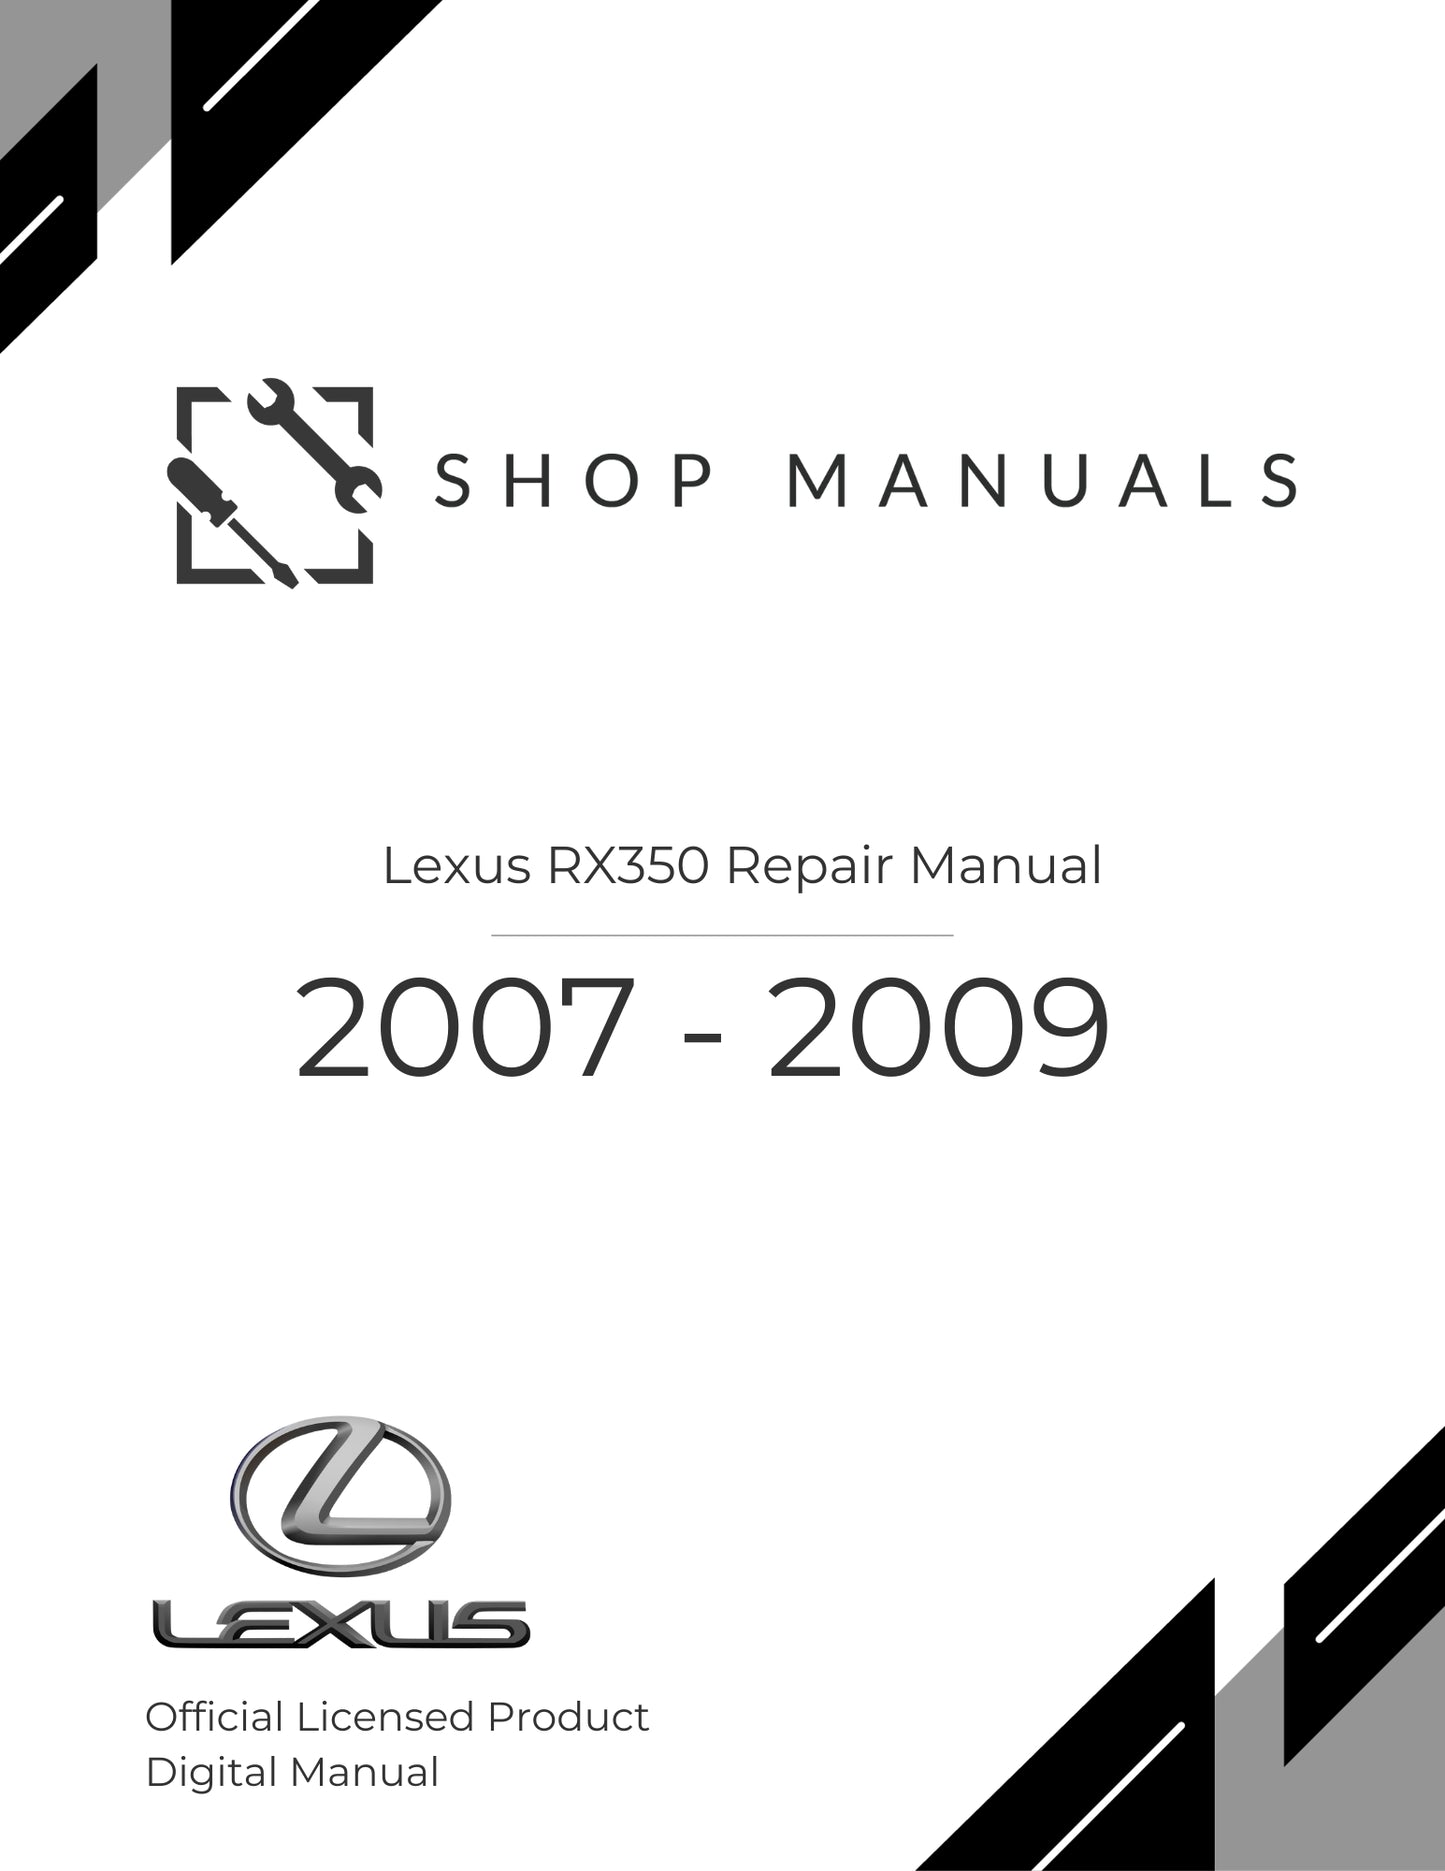 2007 - 2009 Lexus RX350 Repair Manual